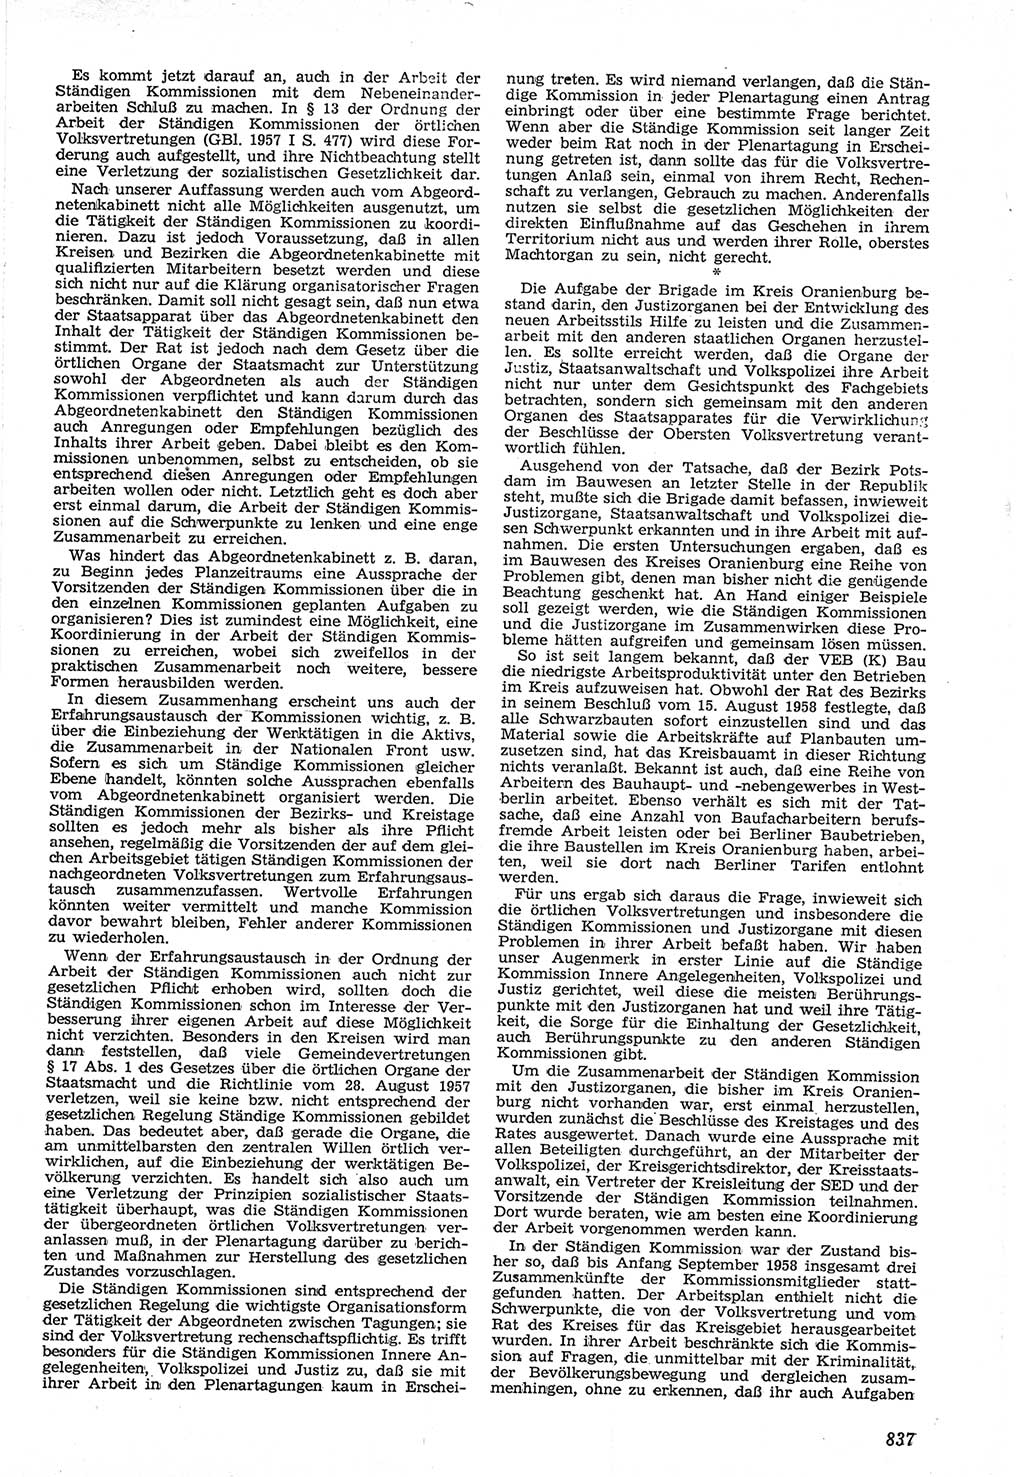 Neue Justiz (NJ), Zeitschrift für Recht und Rechtswissenschaft [Deutsche Demokratische Republik (DDR)], 12. Jahrgang 1958, Seite 837 (NJ DDR 1958, S. 837)